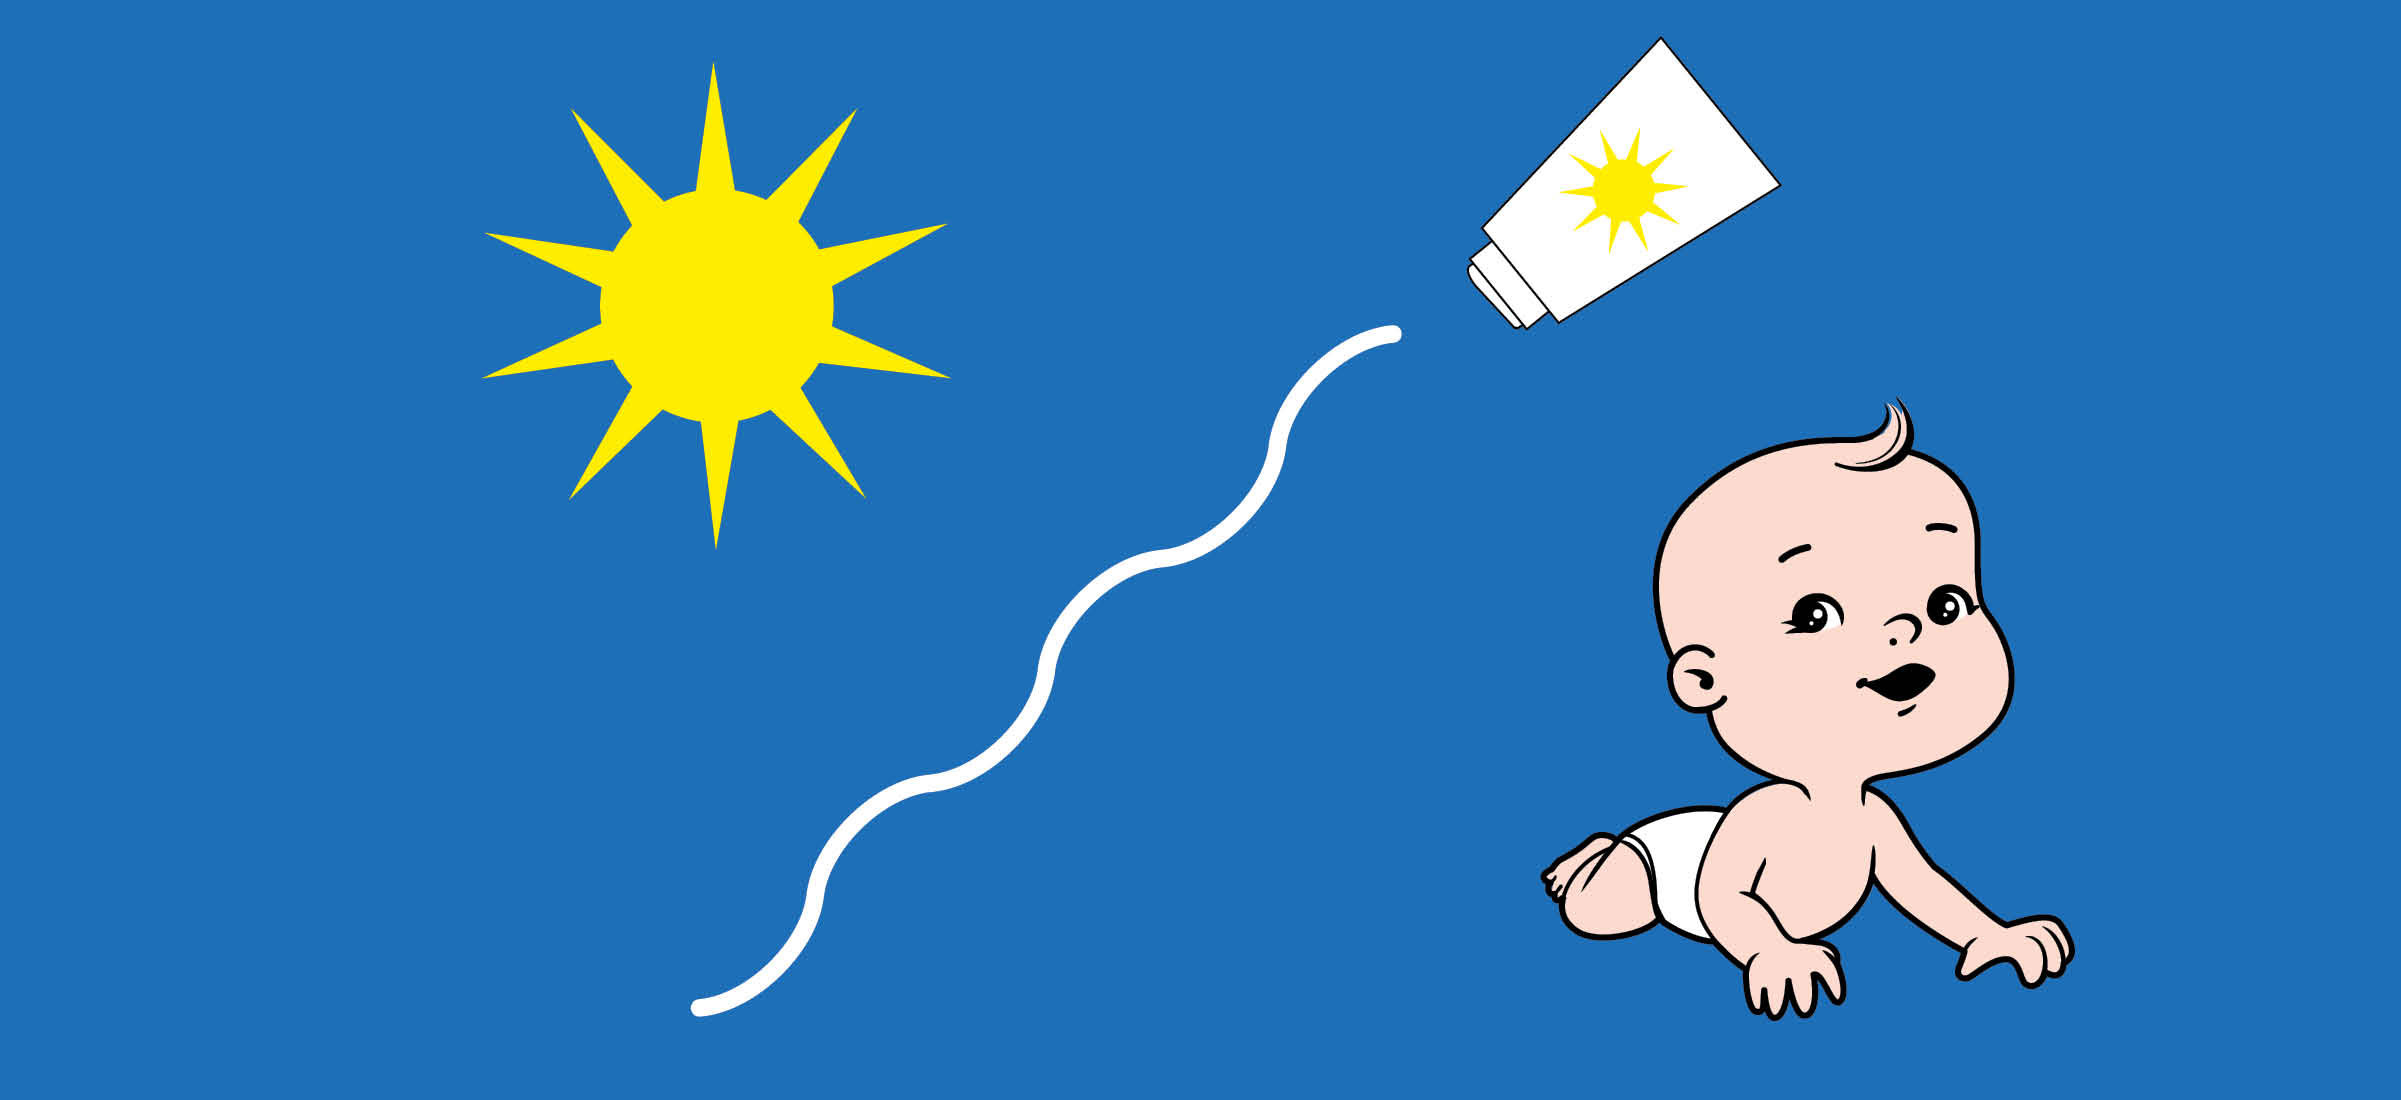 Ein Baby wird durch Sonnencreme vor der Sonne geschützt.